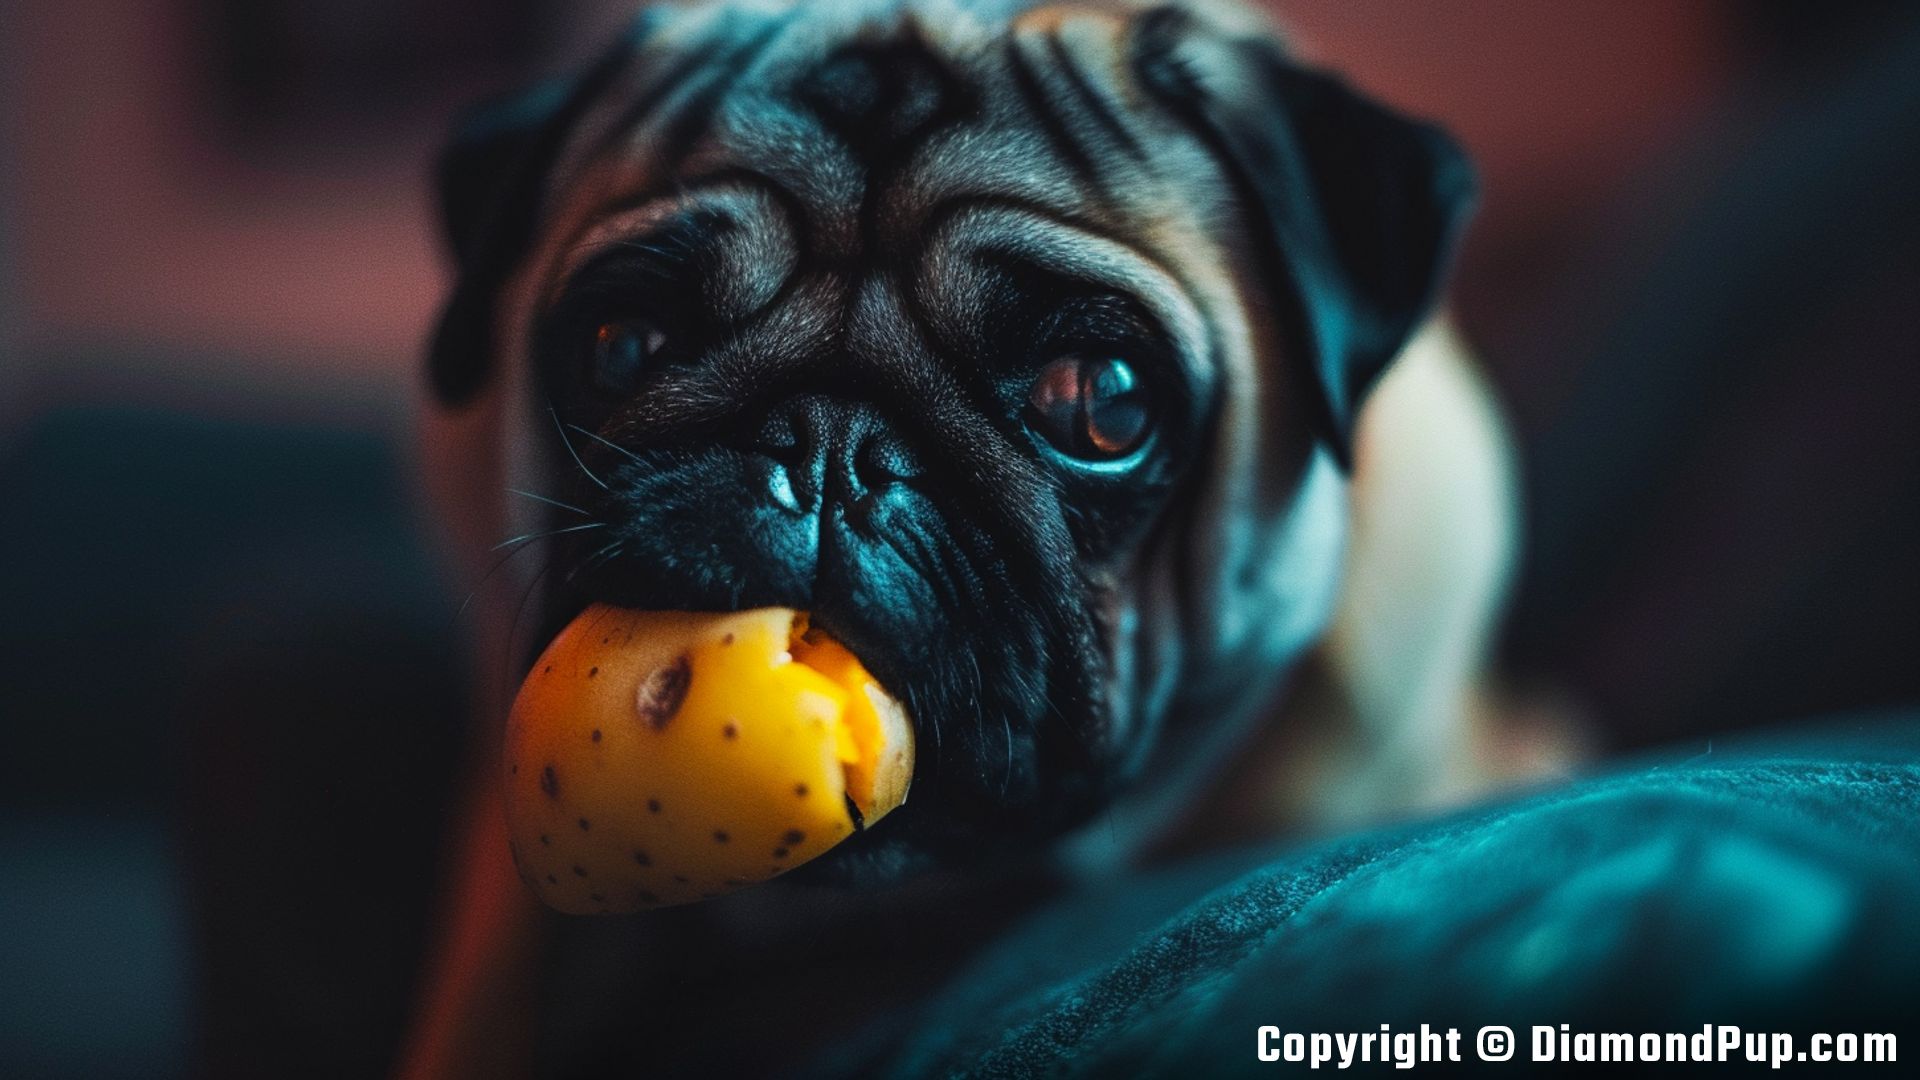 Photograph of an Adorable Pug Snacking on Potato